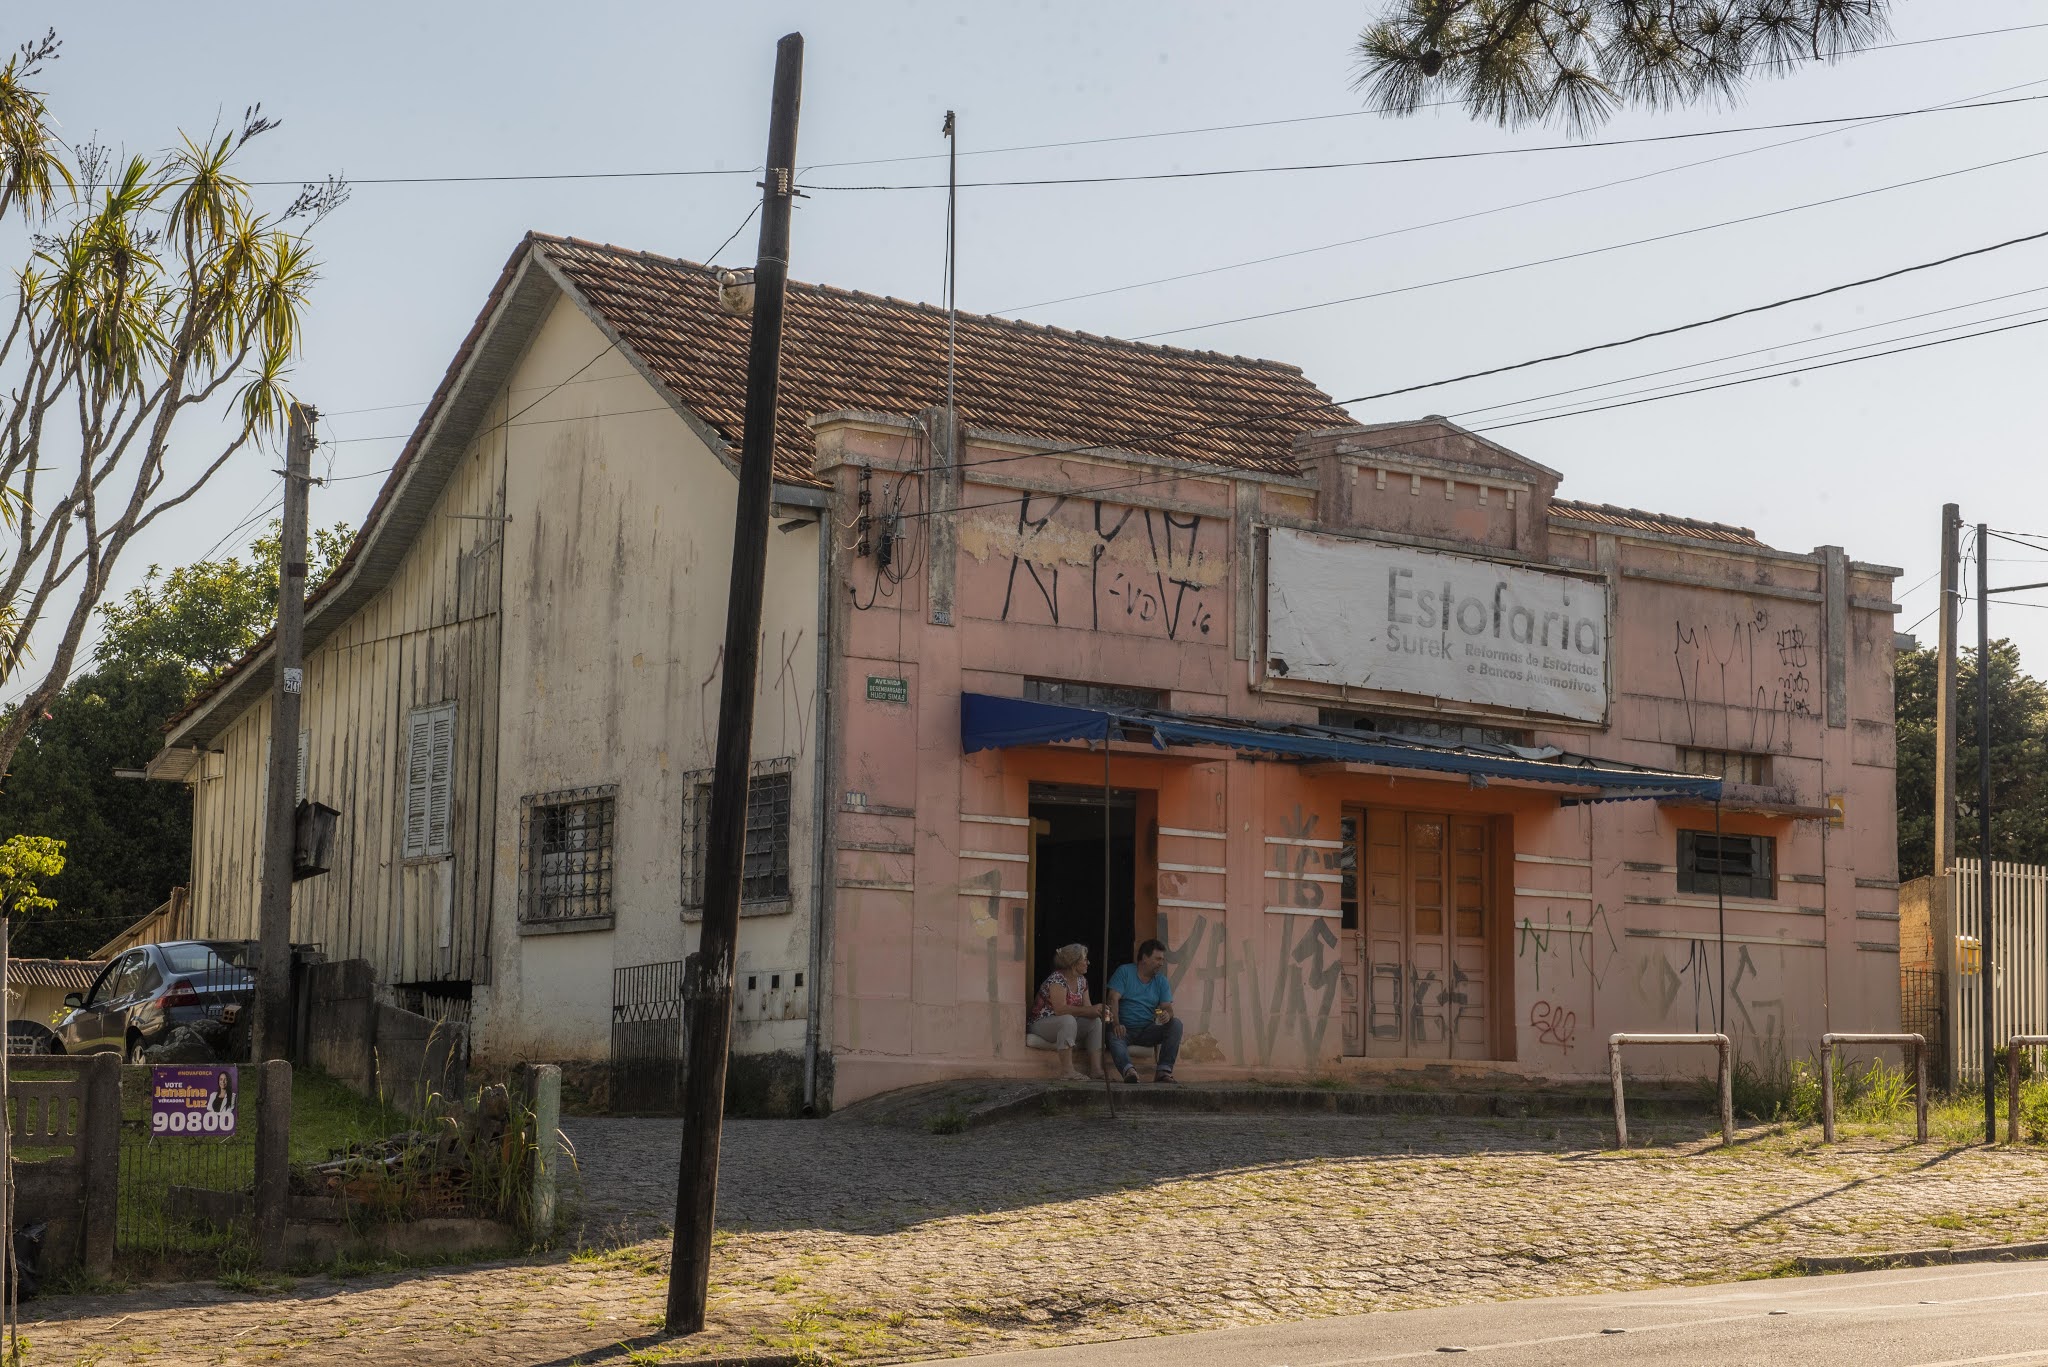 Fotografando Curitiba: Outra casa de madeira no Cristo Rei